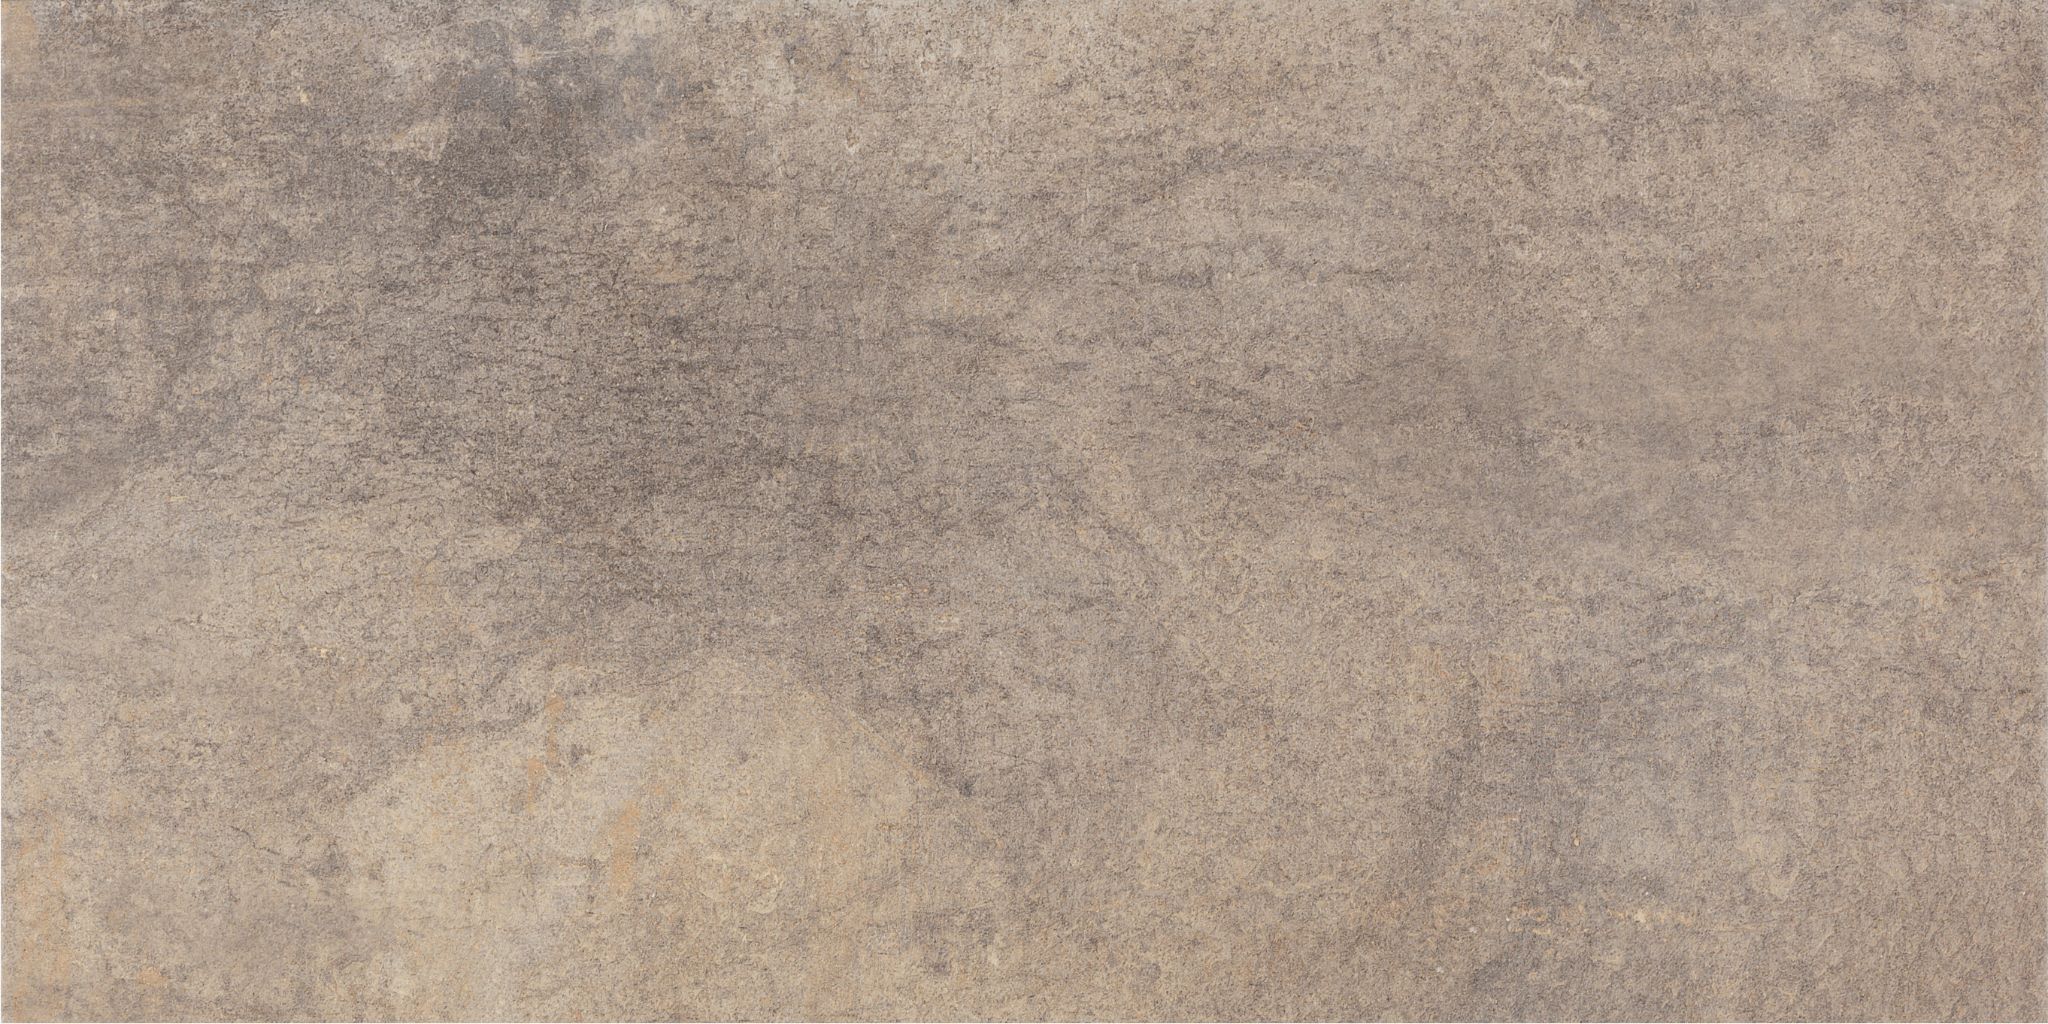 AMBRE安布雷地壁磚-GREIGE灰褐色30X60